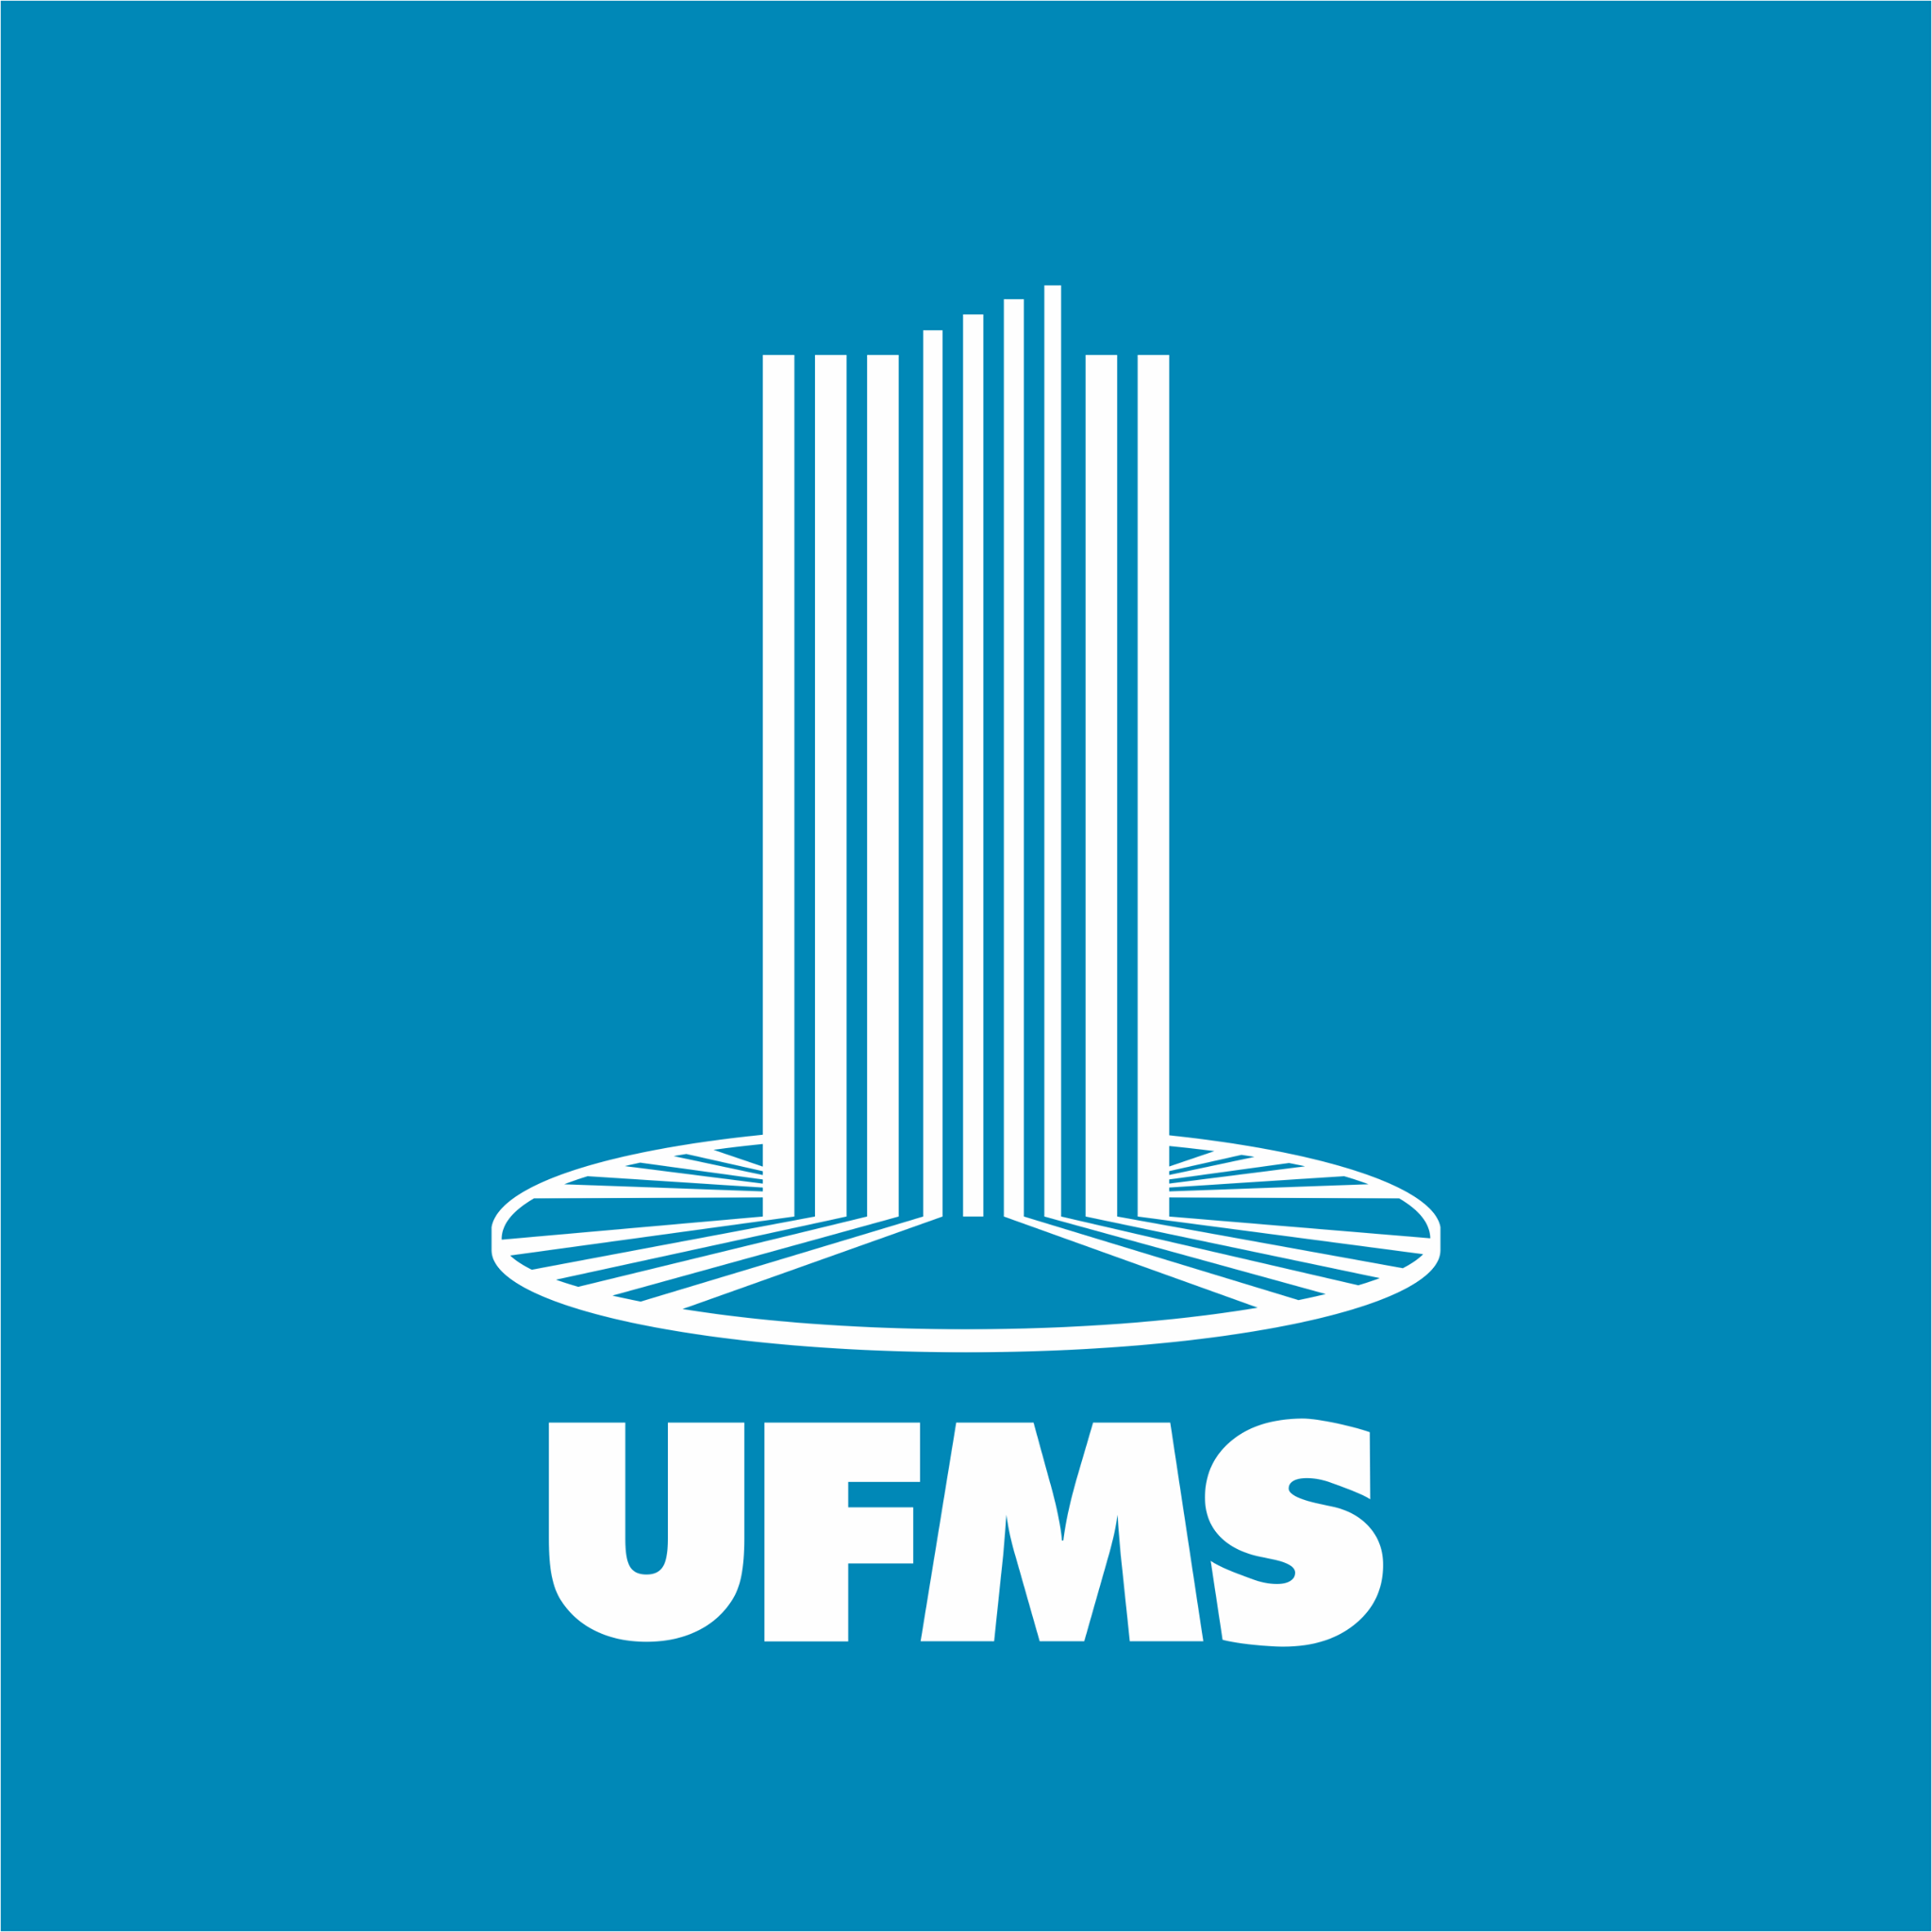 cursos de mestrado gratuitos da ufms abrem inscrições